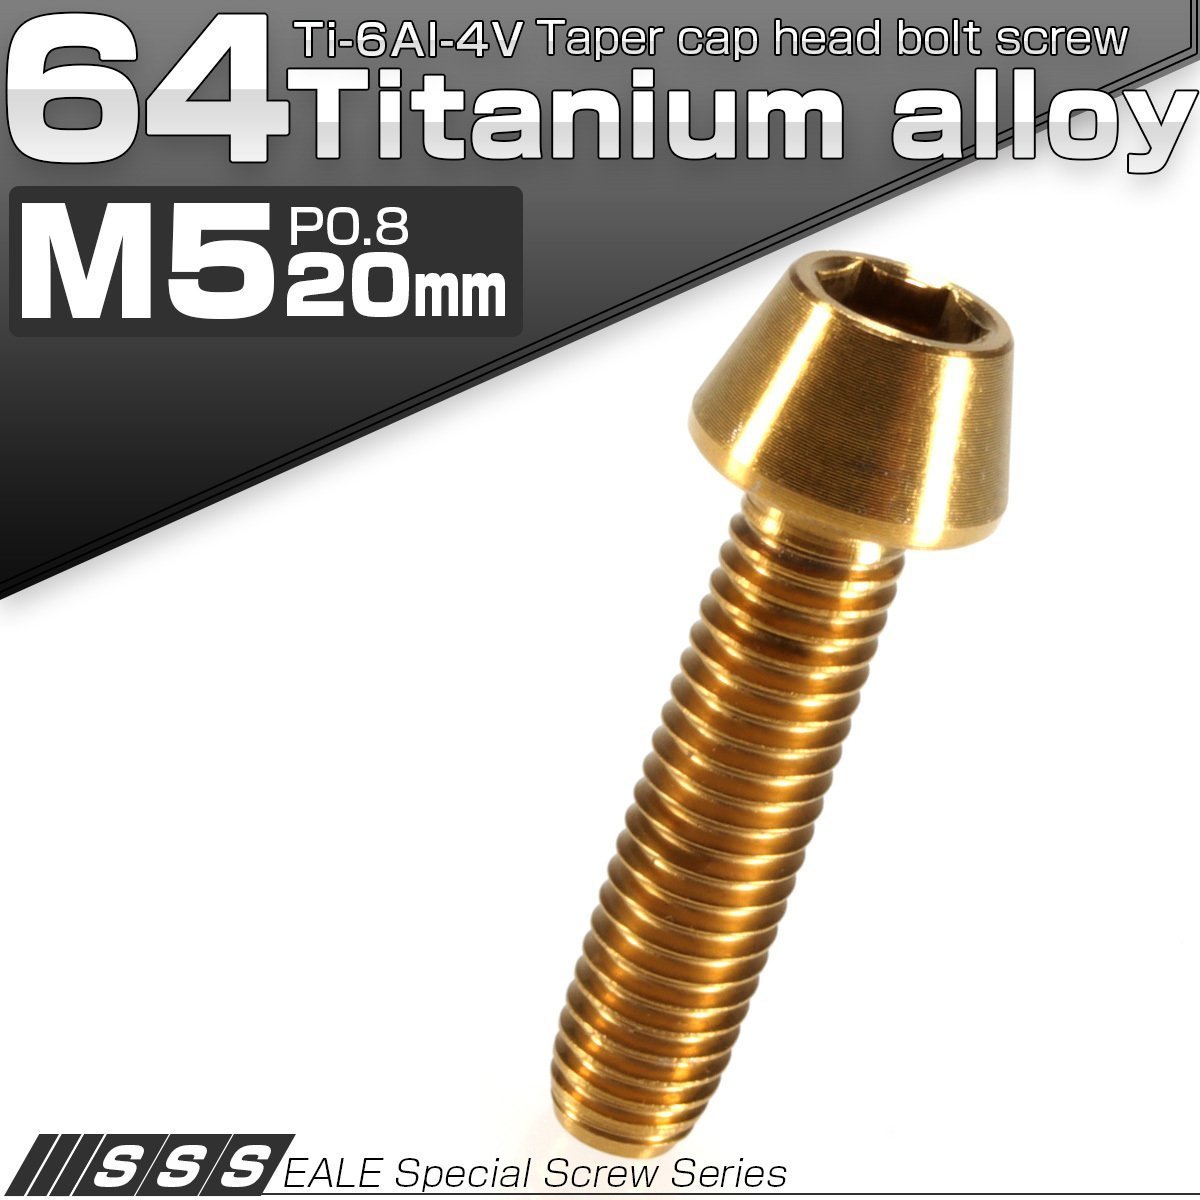 64チタン M5×20mm P0.8 テーパー キャップボルト ゴールド 六角穴付きボルト Ti6Al-4V チタンボルト JA351_画像1